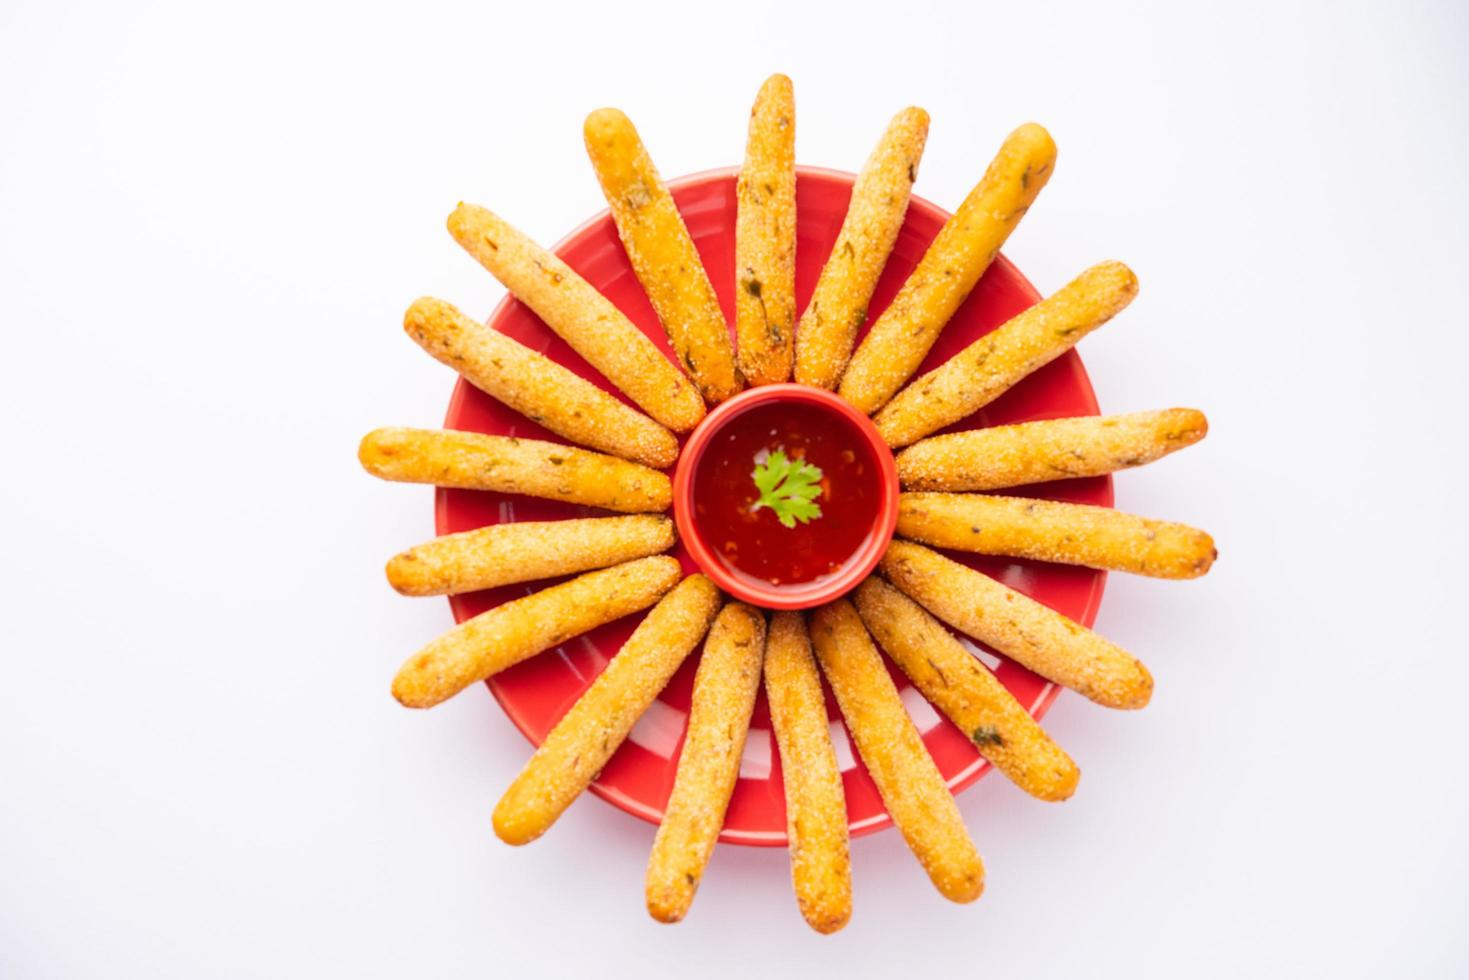 croccante rava aloo dita o Patata semolino fritte dito bastoni servito con ketchup foto